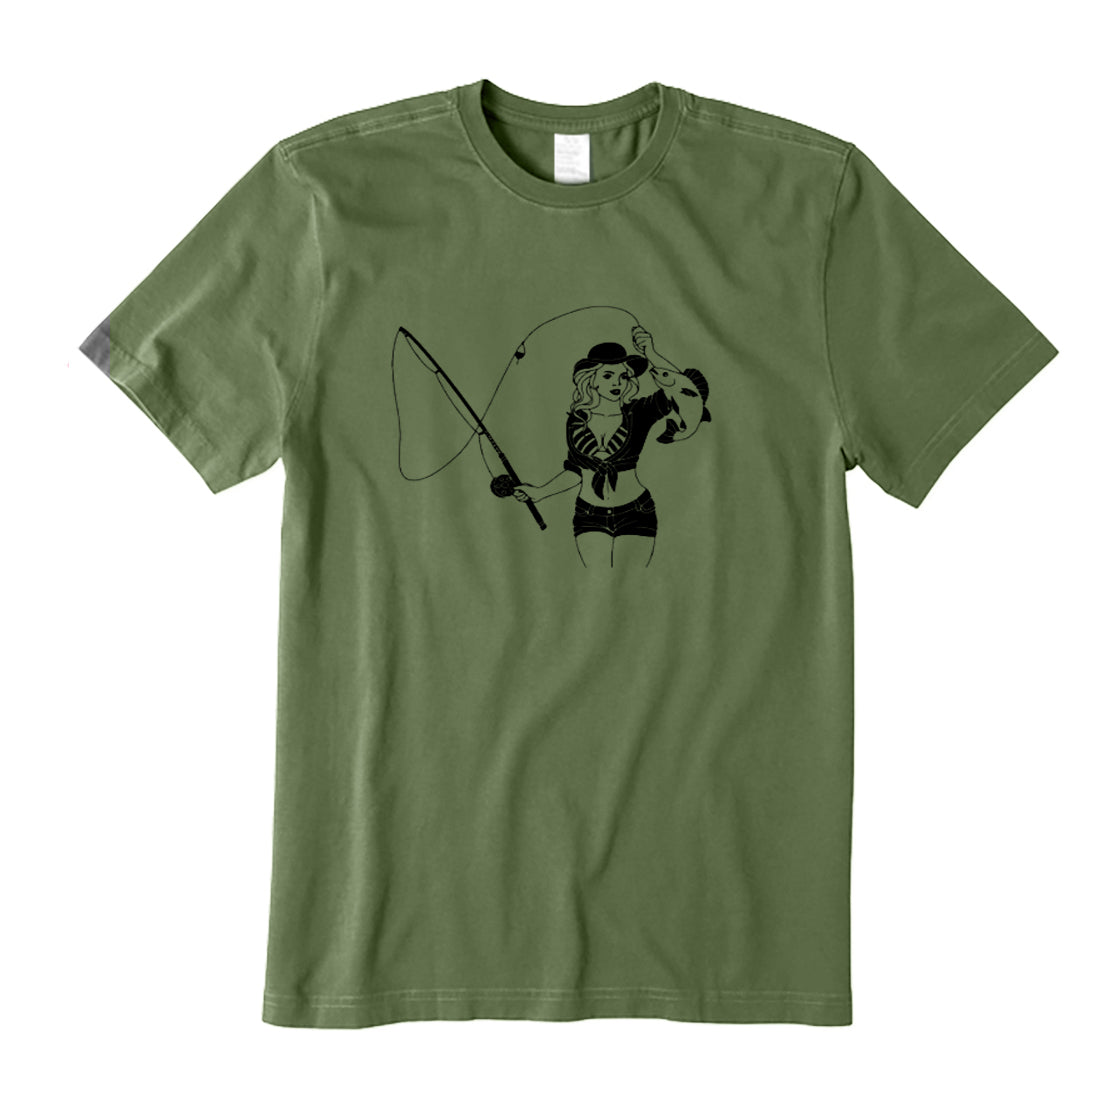 A Fishing Women T-Shirt